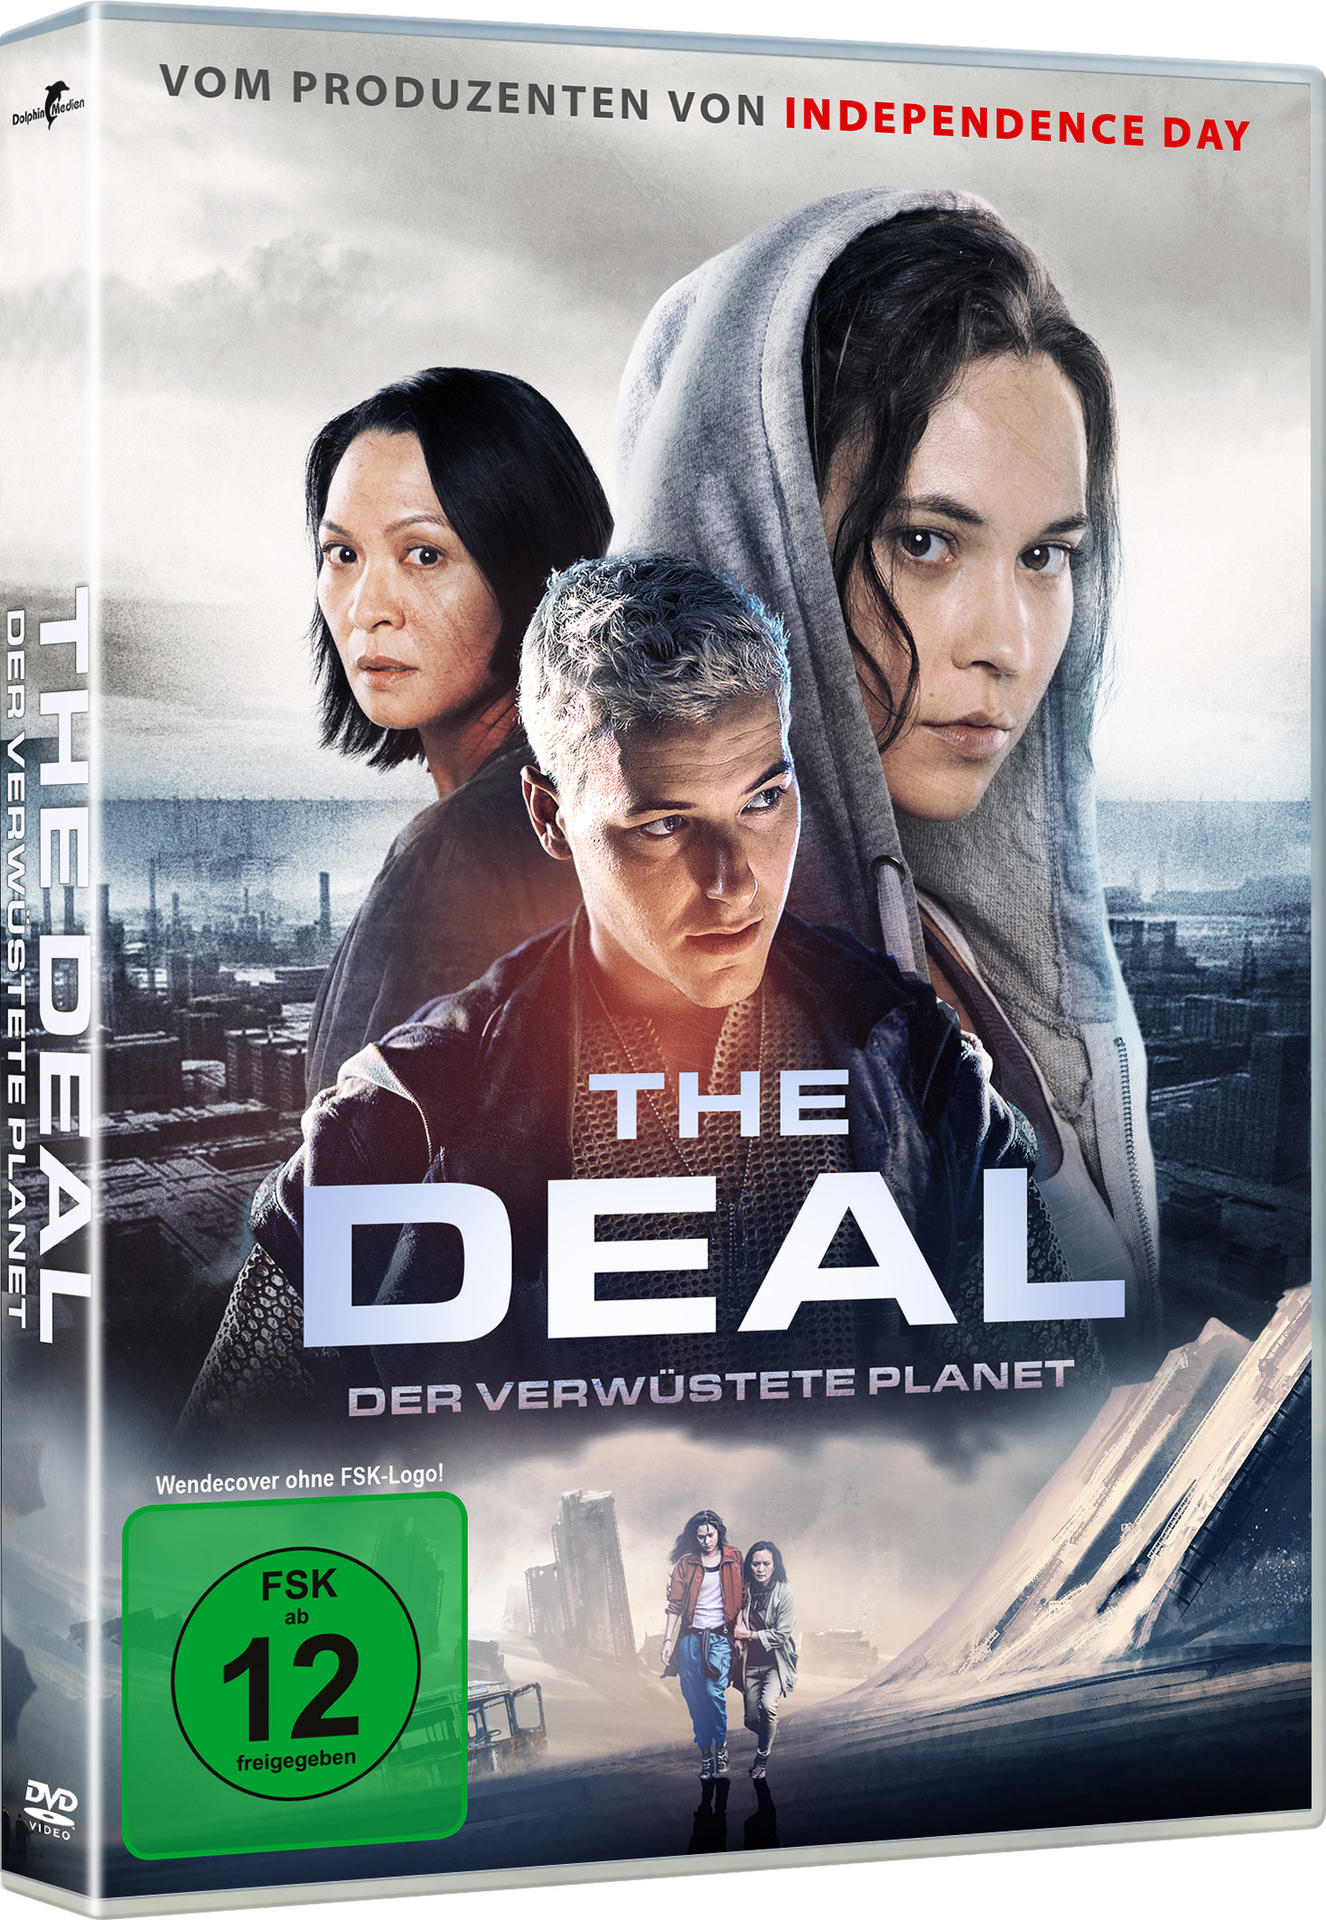 The Deal Planet DVD verwüstete Der 